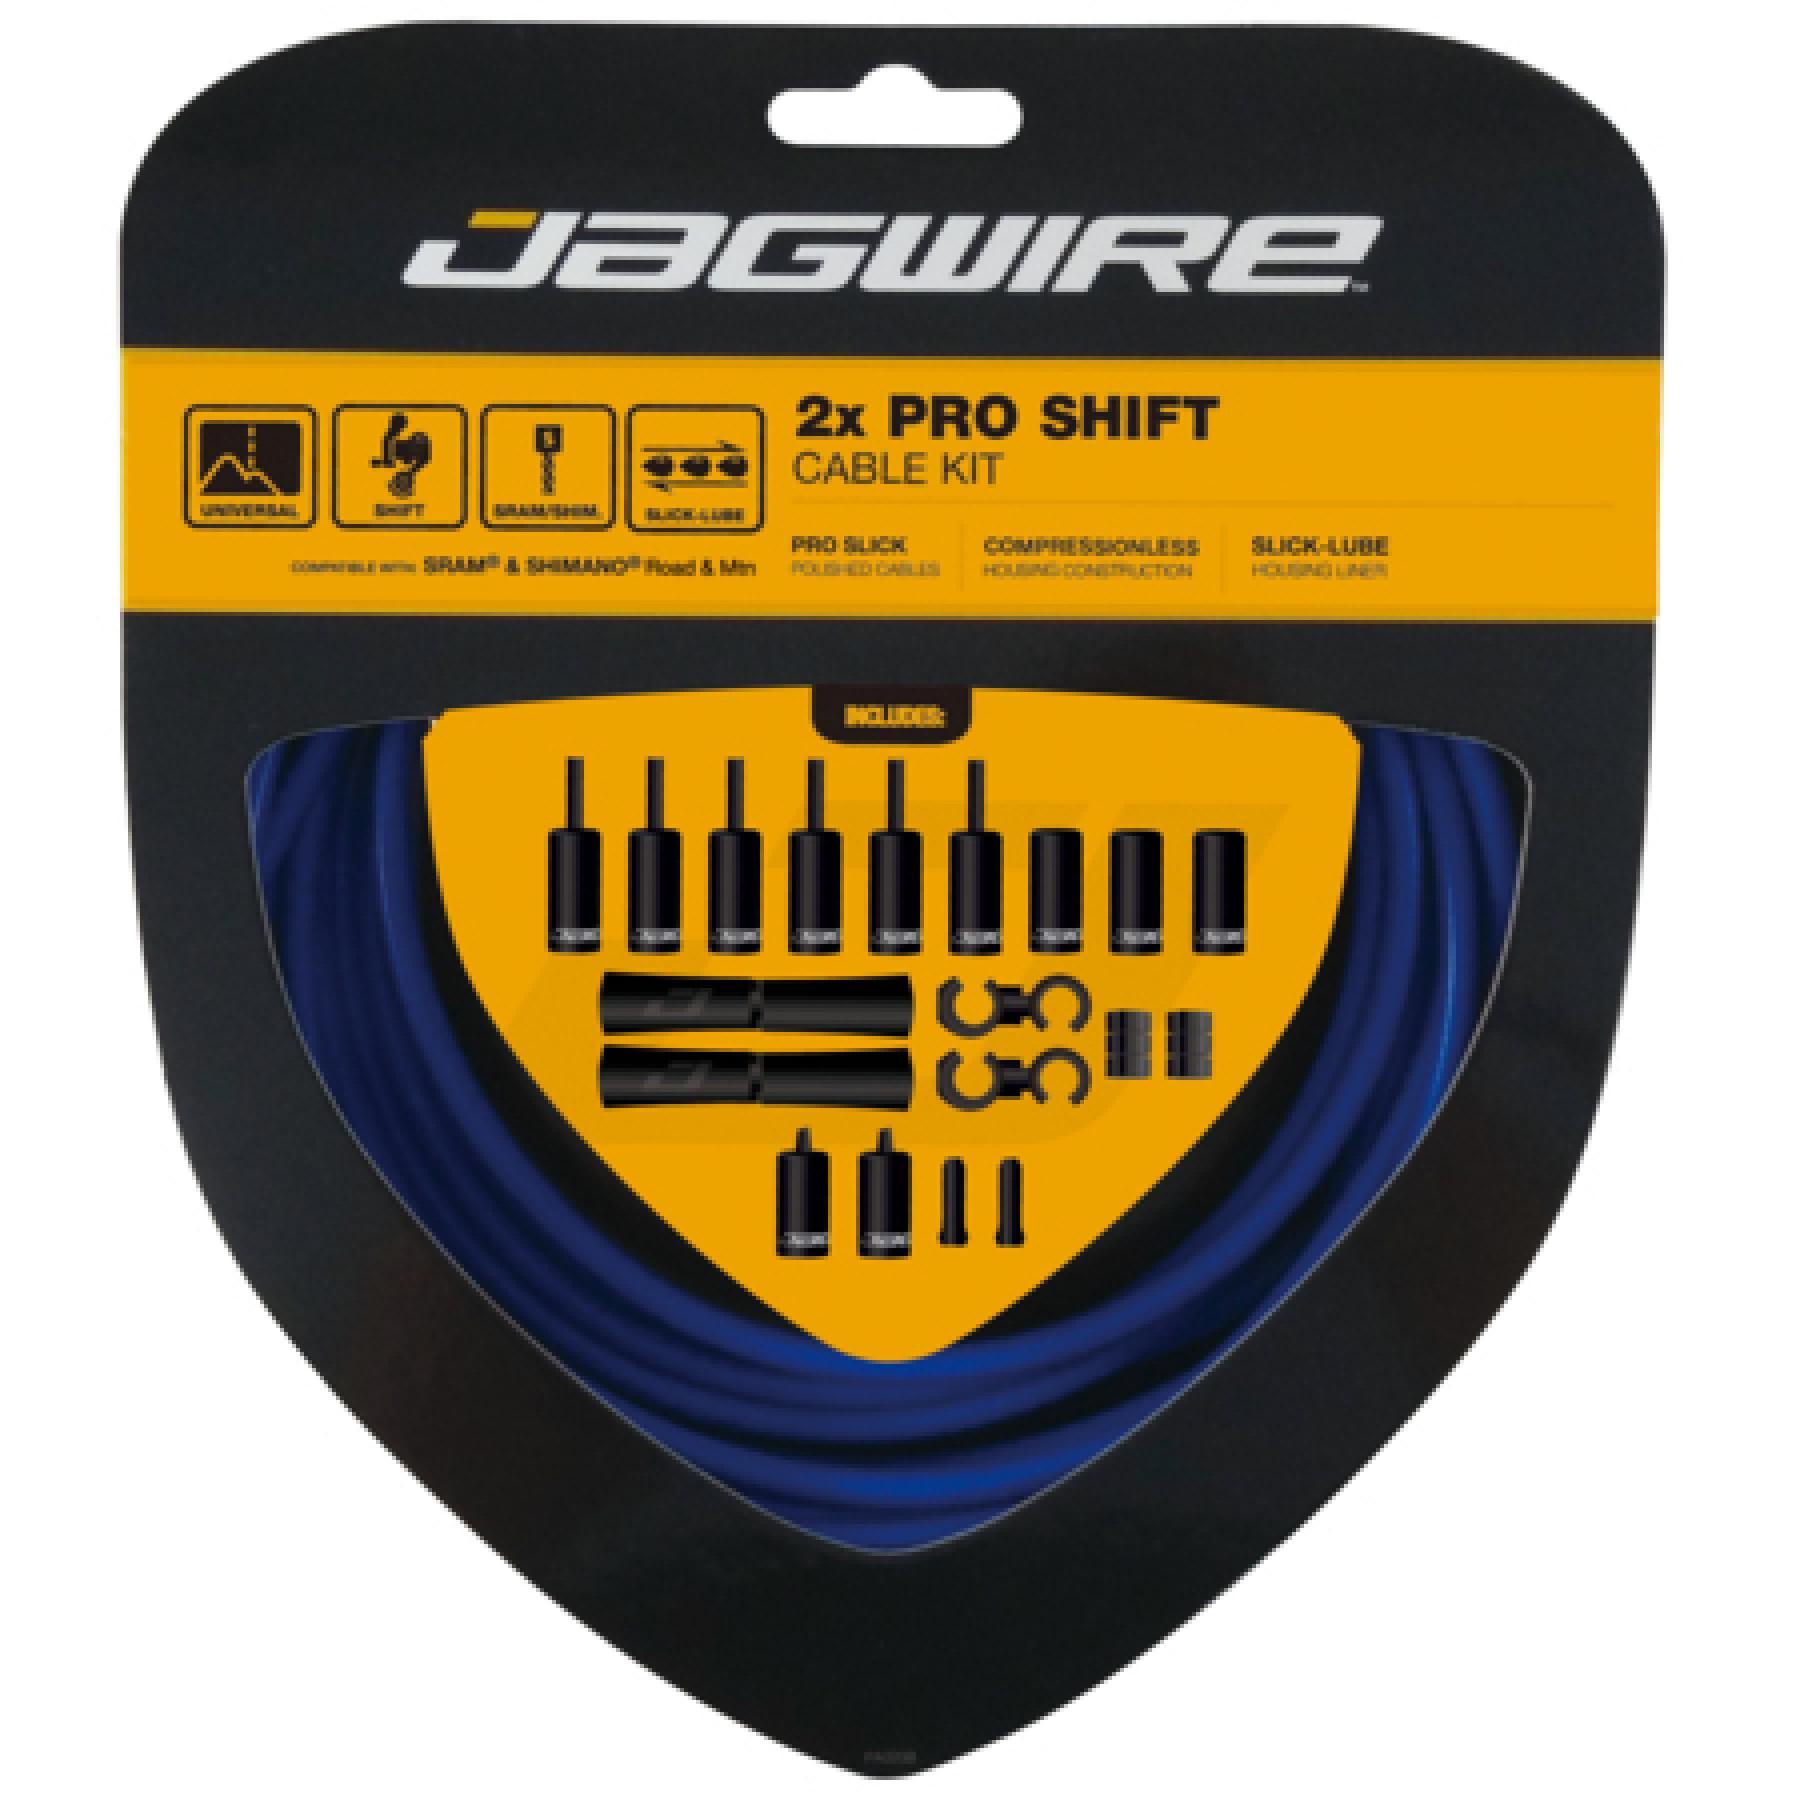 Kabel för växelförare Jagwire 2X Pro